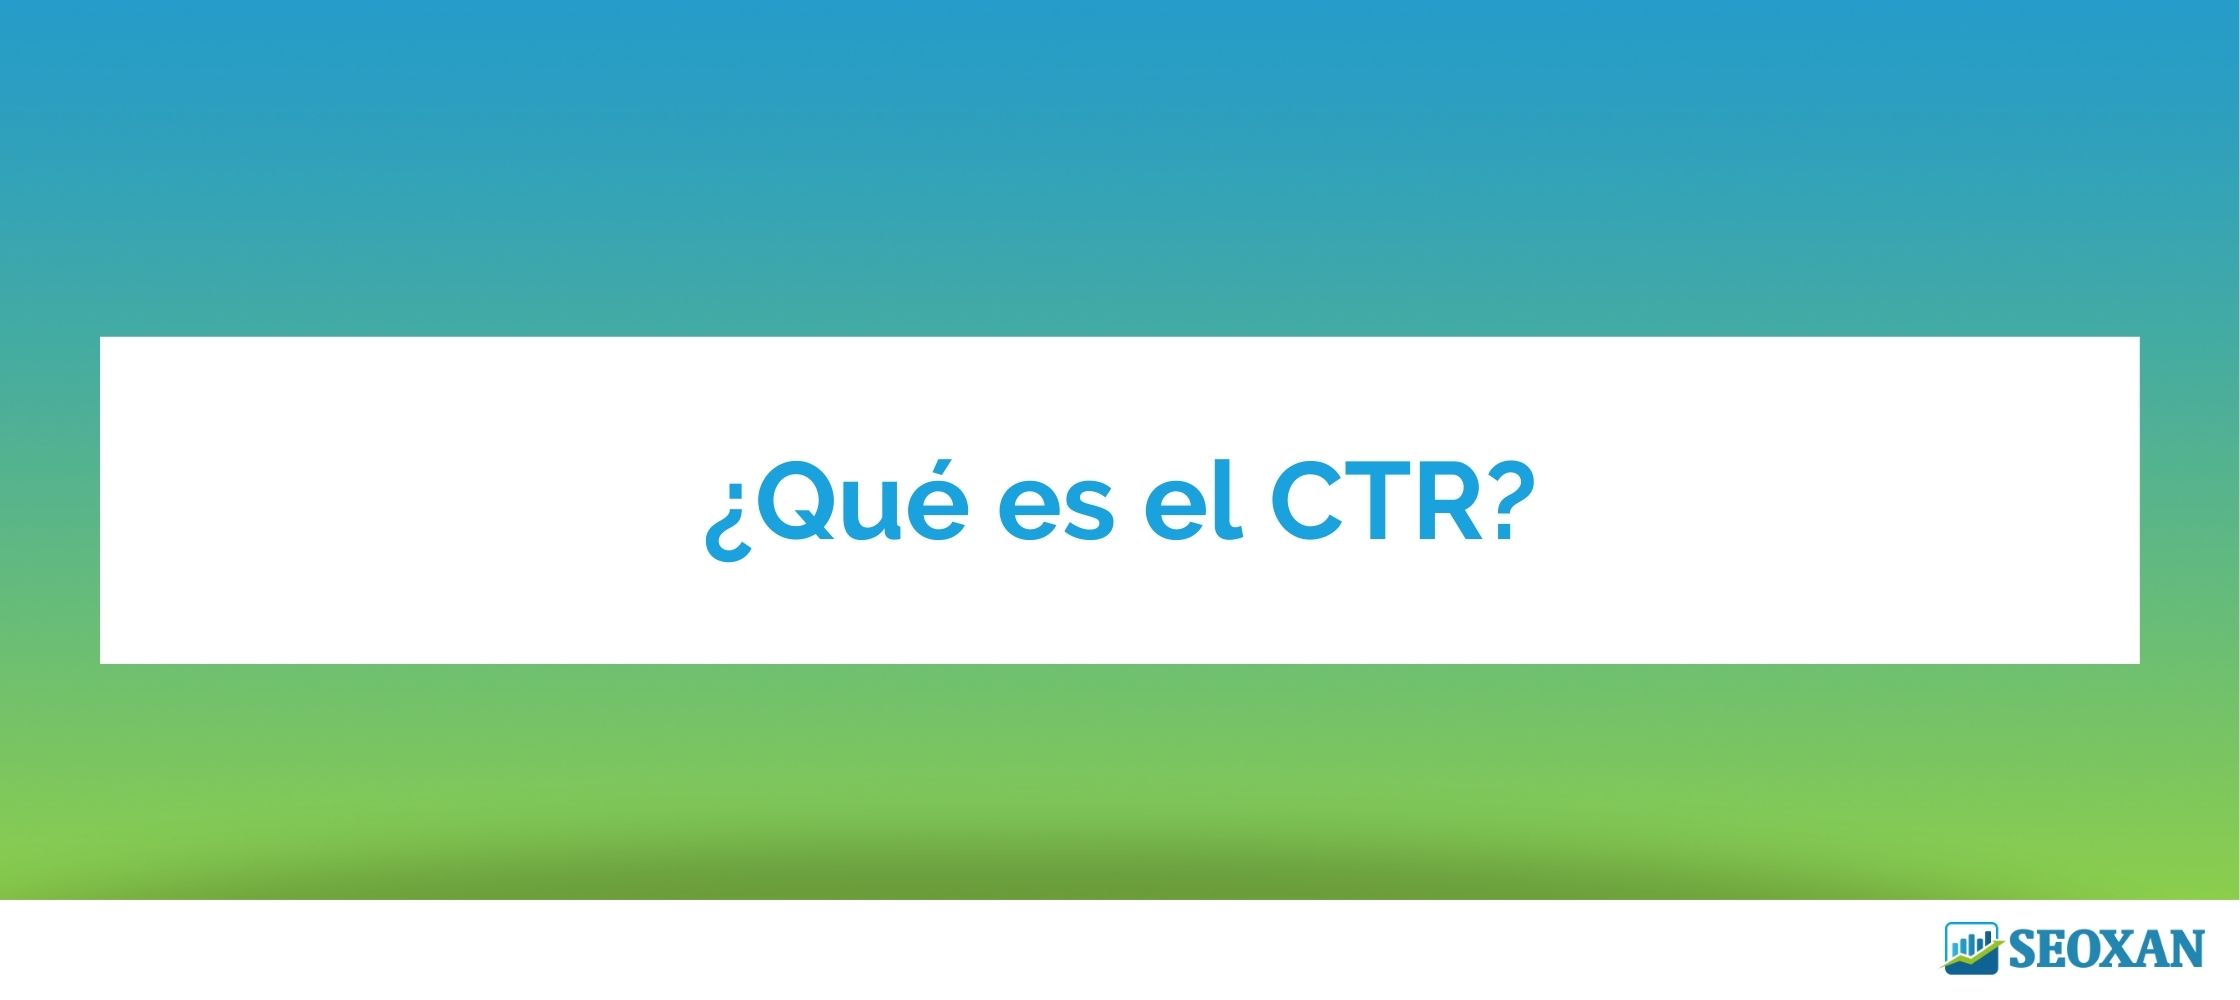 ¿Qué es el CTR?